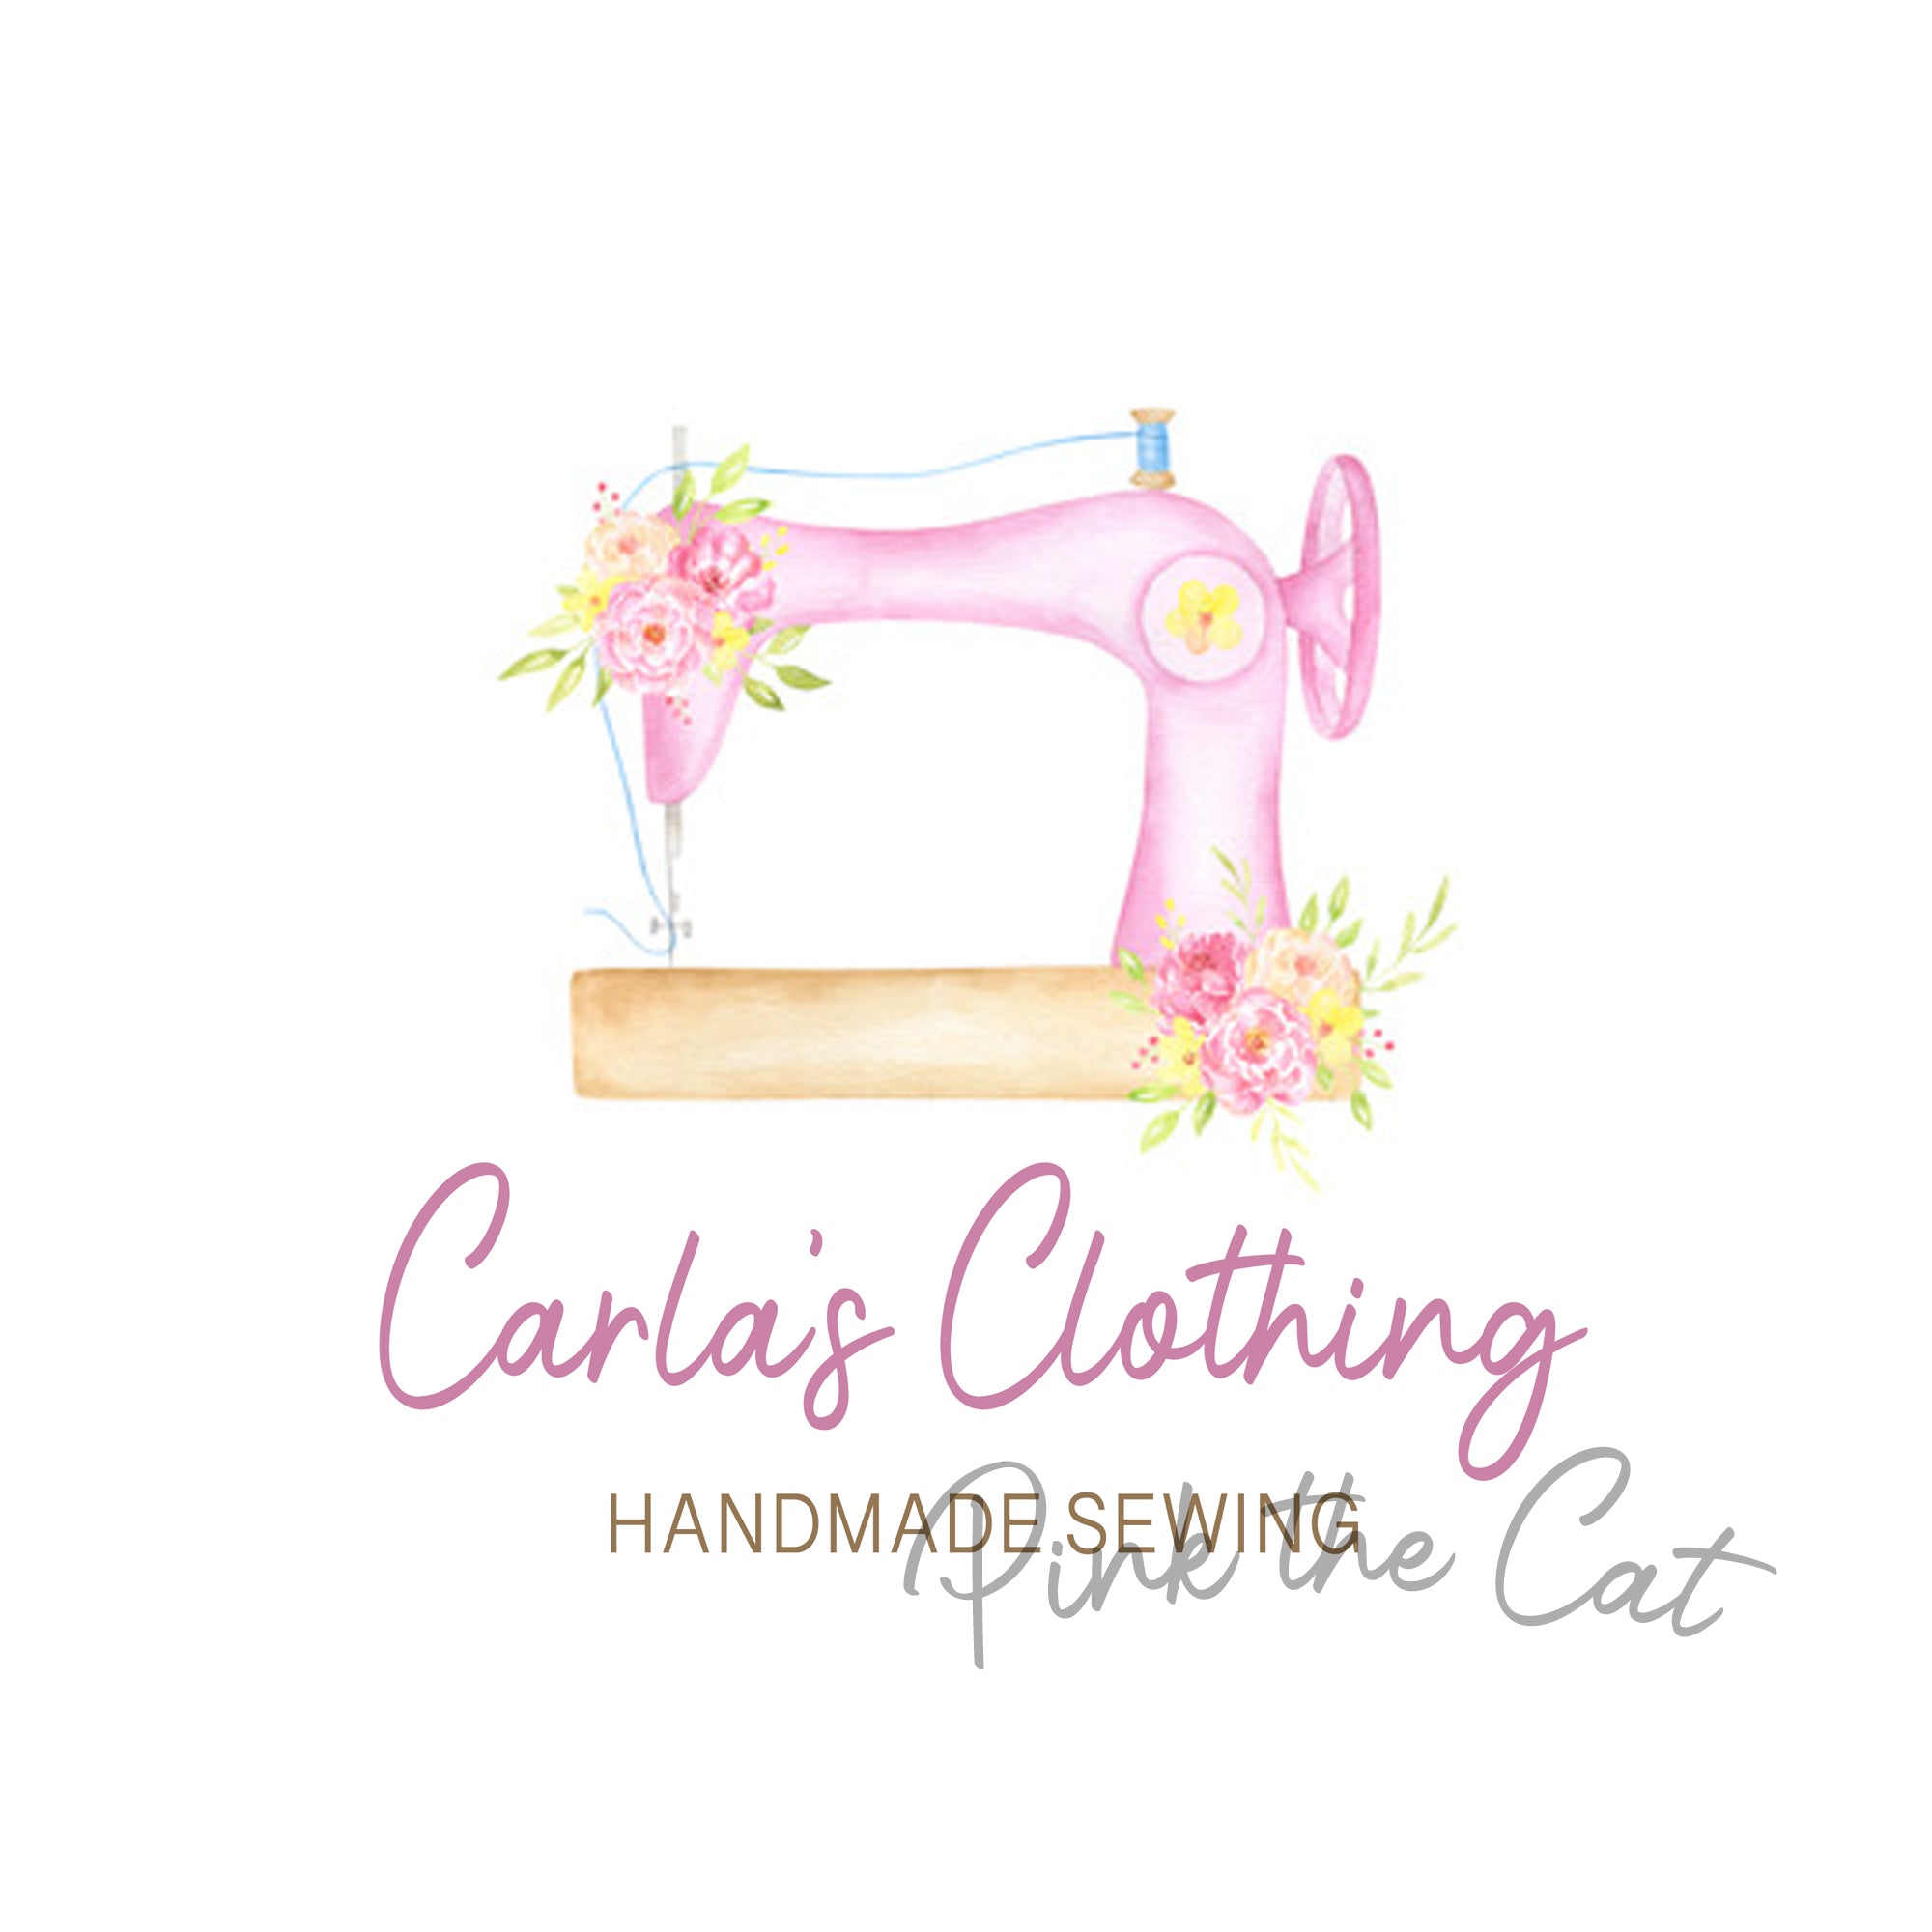 Premade pink sewing logo design